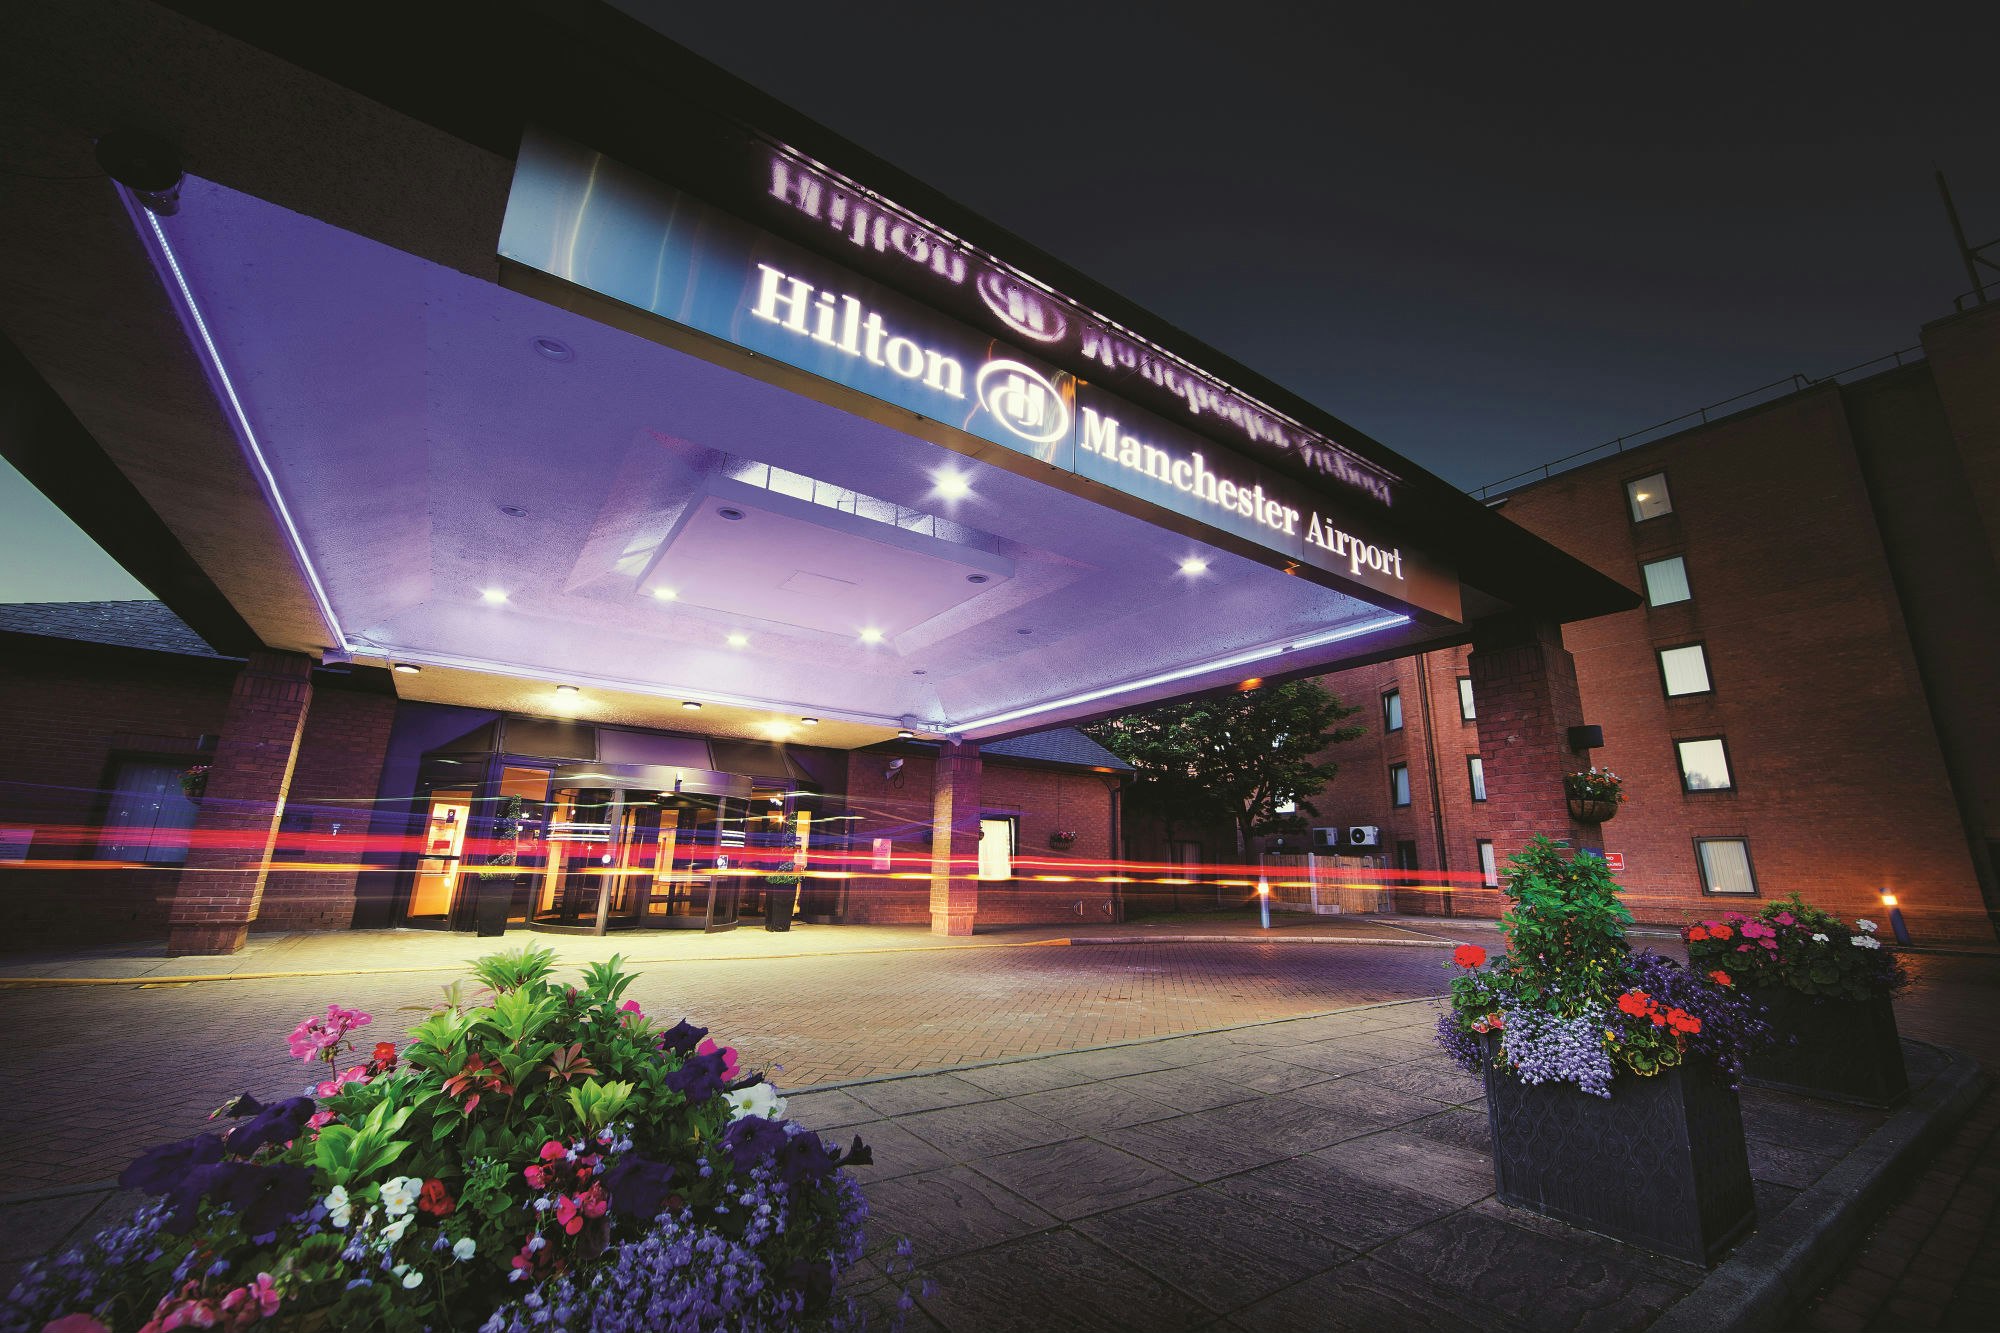 Hilton, Manchester Airport - Dorval Suite image 2